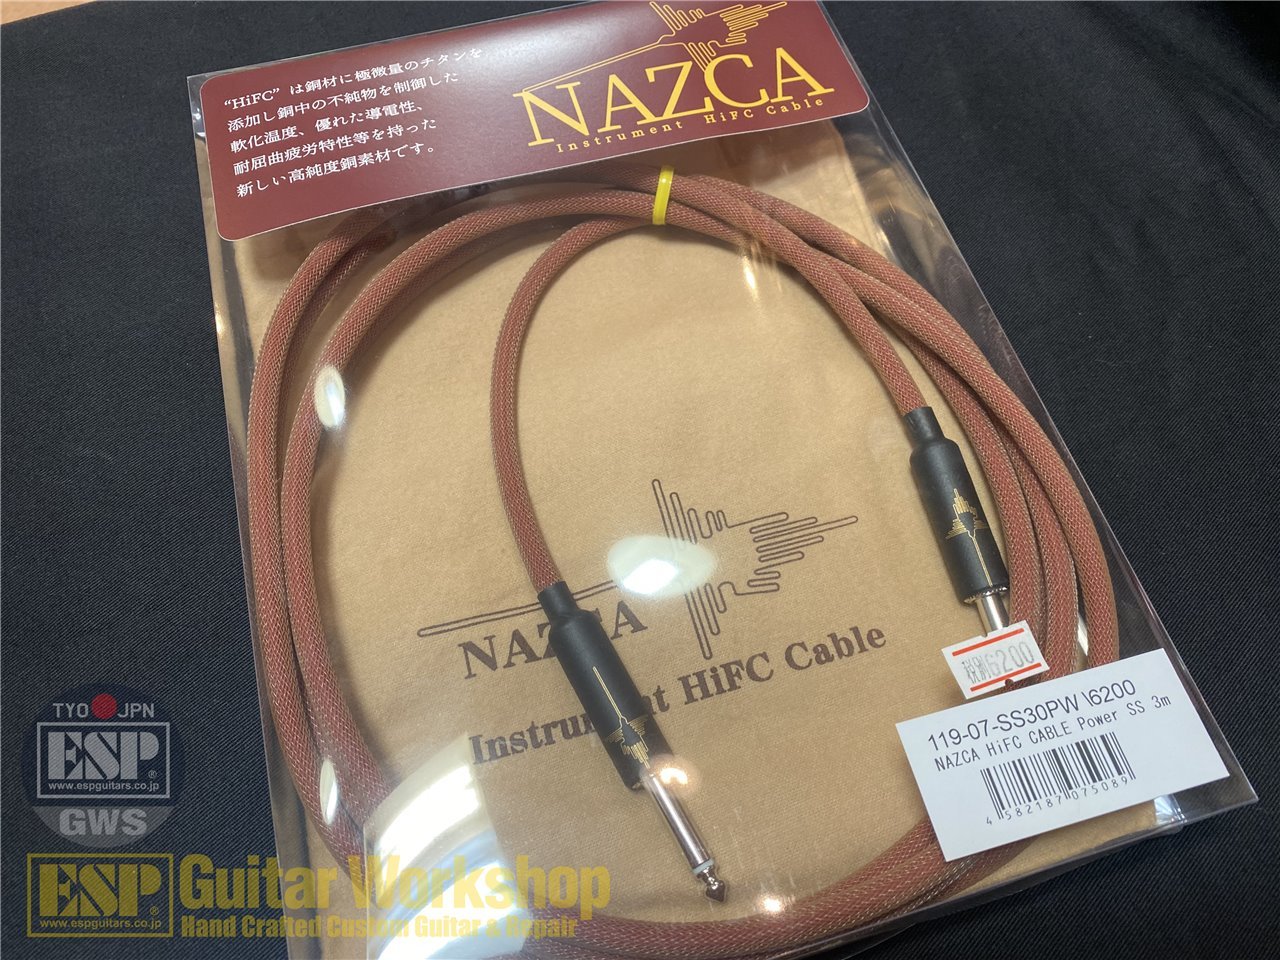 6479円 うのにもお得な情報満載！ NAZCA Instrument HiFC Cable 7m S